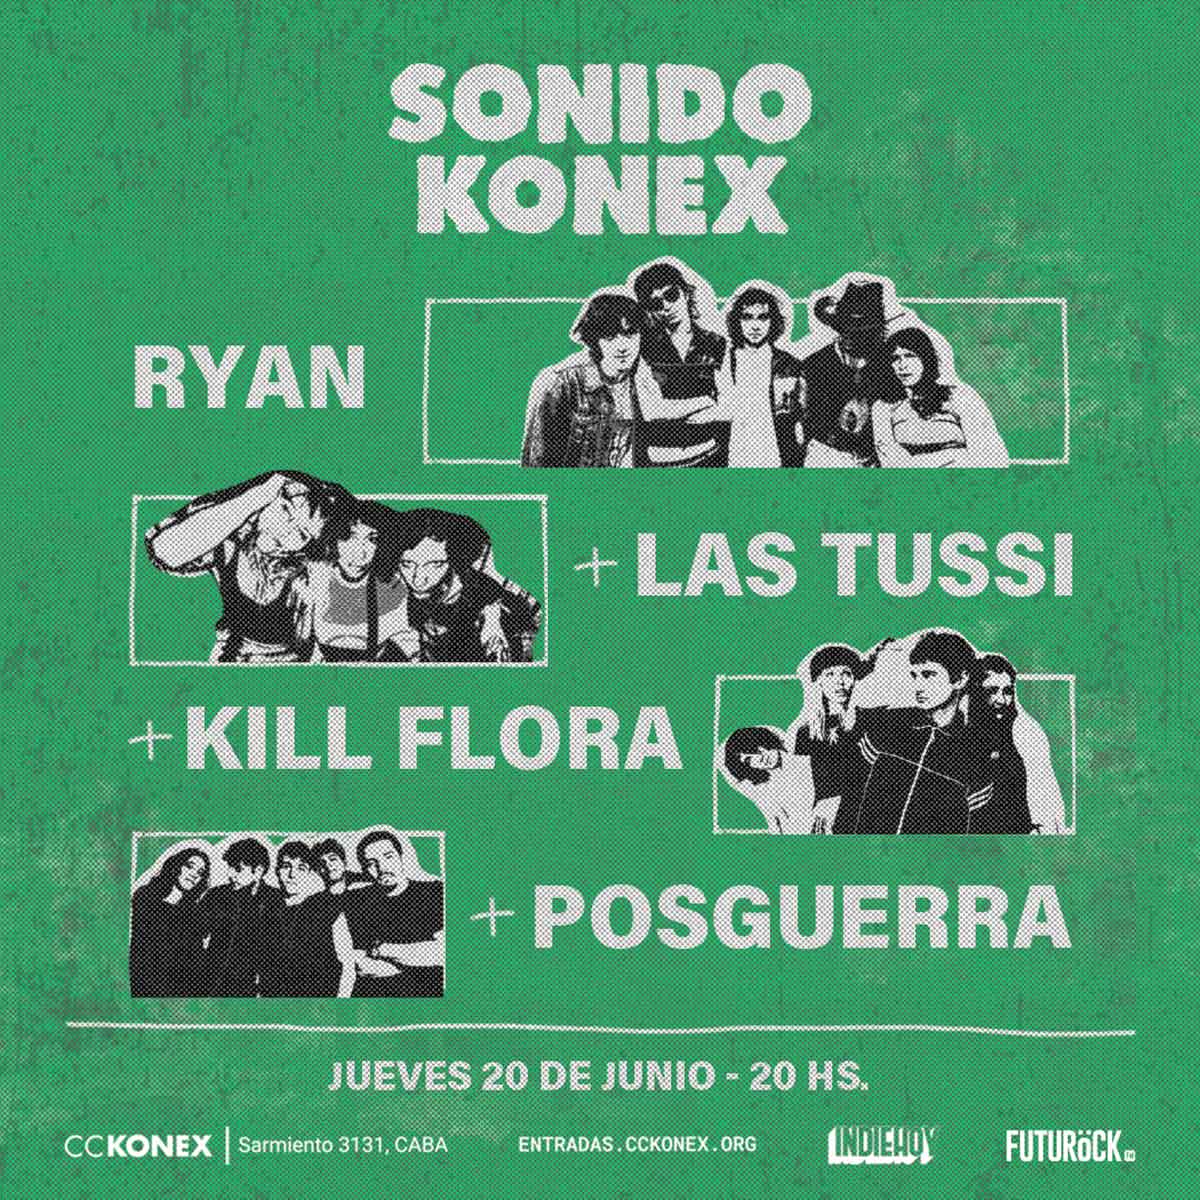 Ryan, Las Tussi, Kill Flora y Posguerra en el Konex